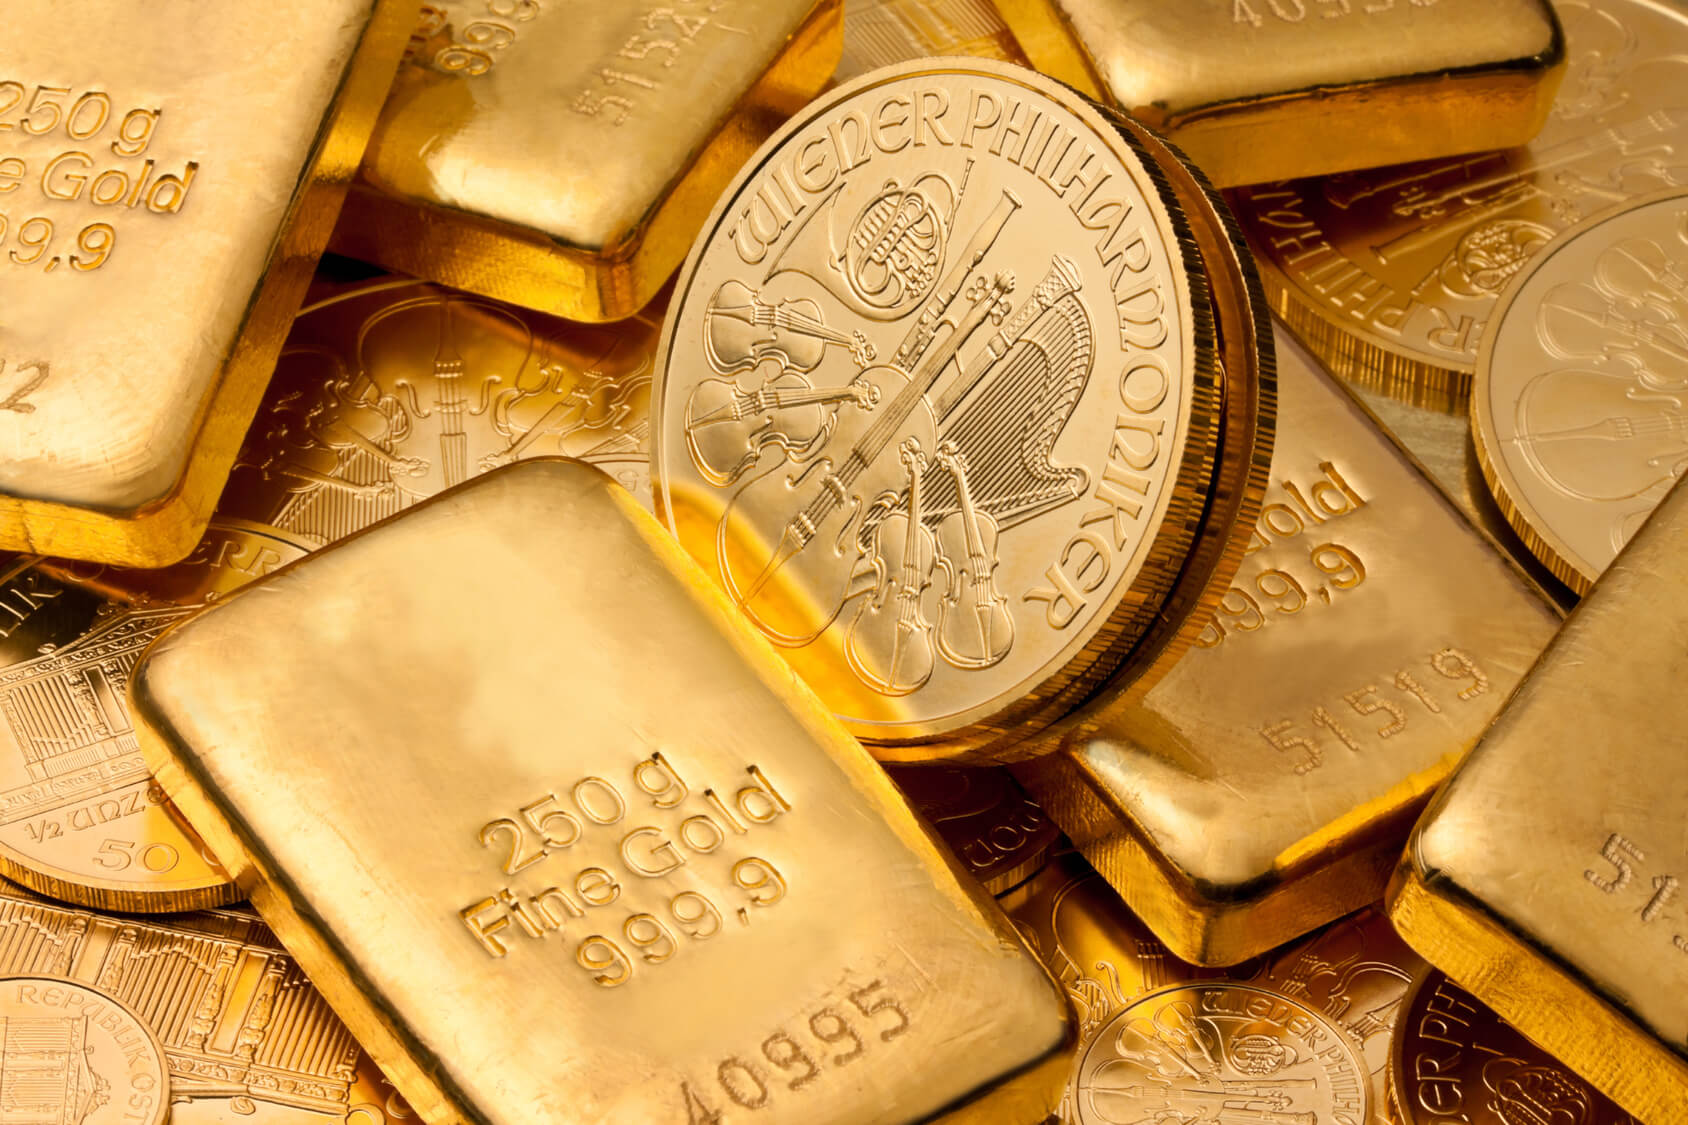 Golden Gates Edelmetalle: „Inflationssichere Coins bestehen aus Gold, nicht aus Bits!“